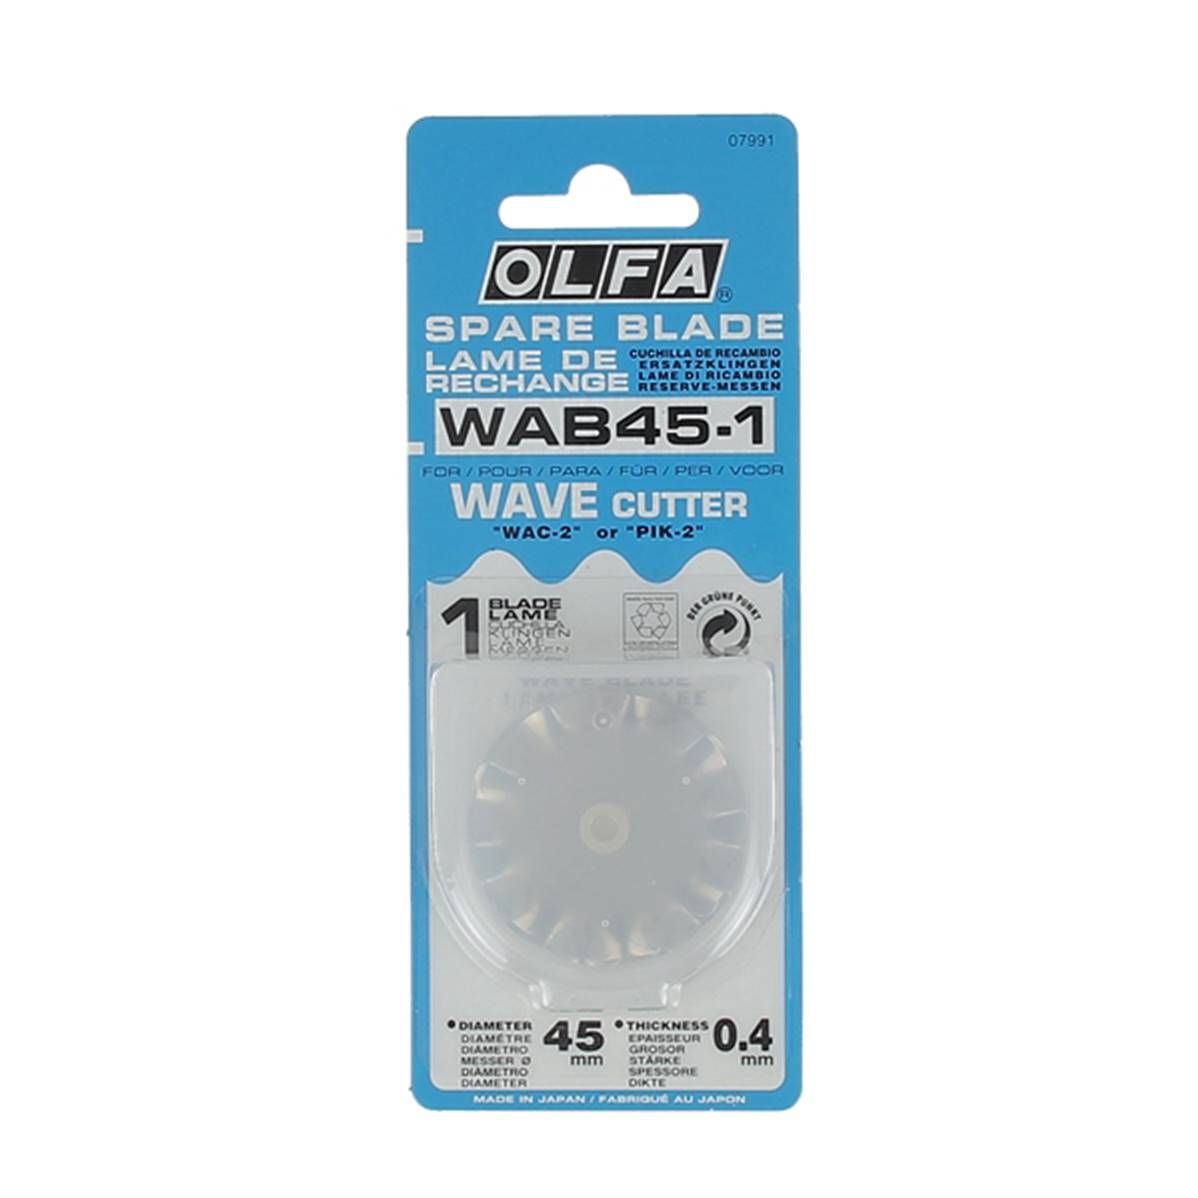 1 lame de rechange pour cutter rotatif diam 45 mm - Découpe crantée - OLFA WAB45